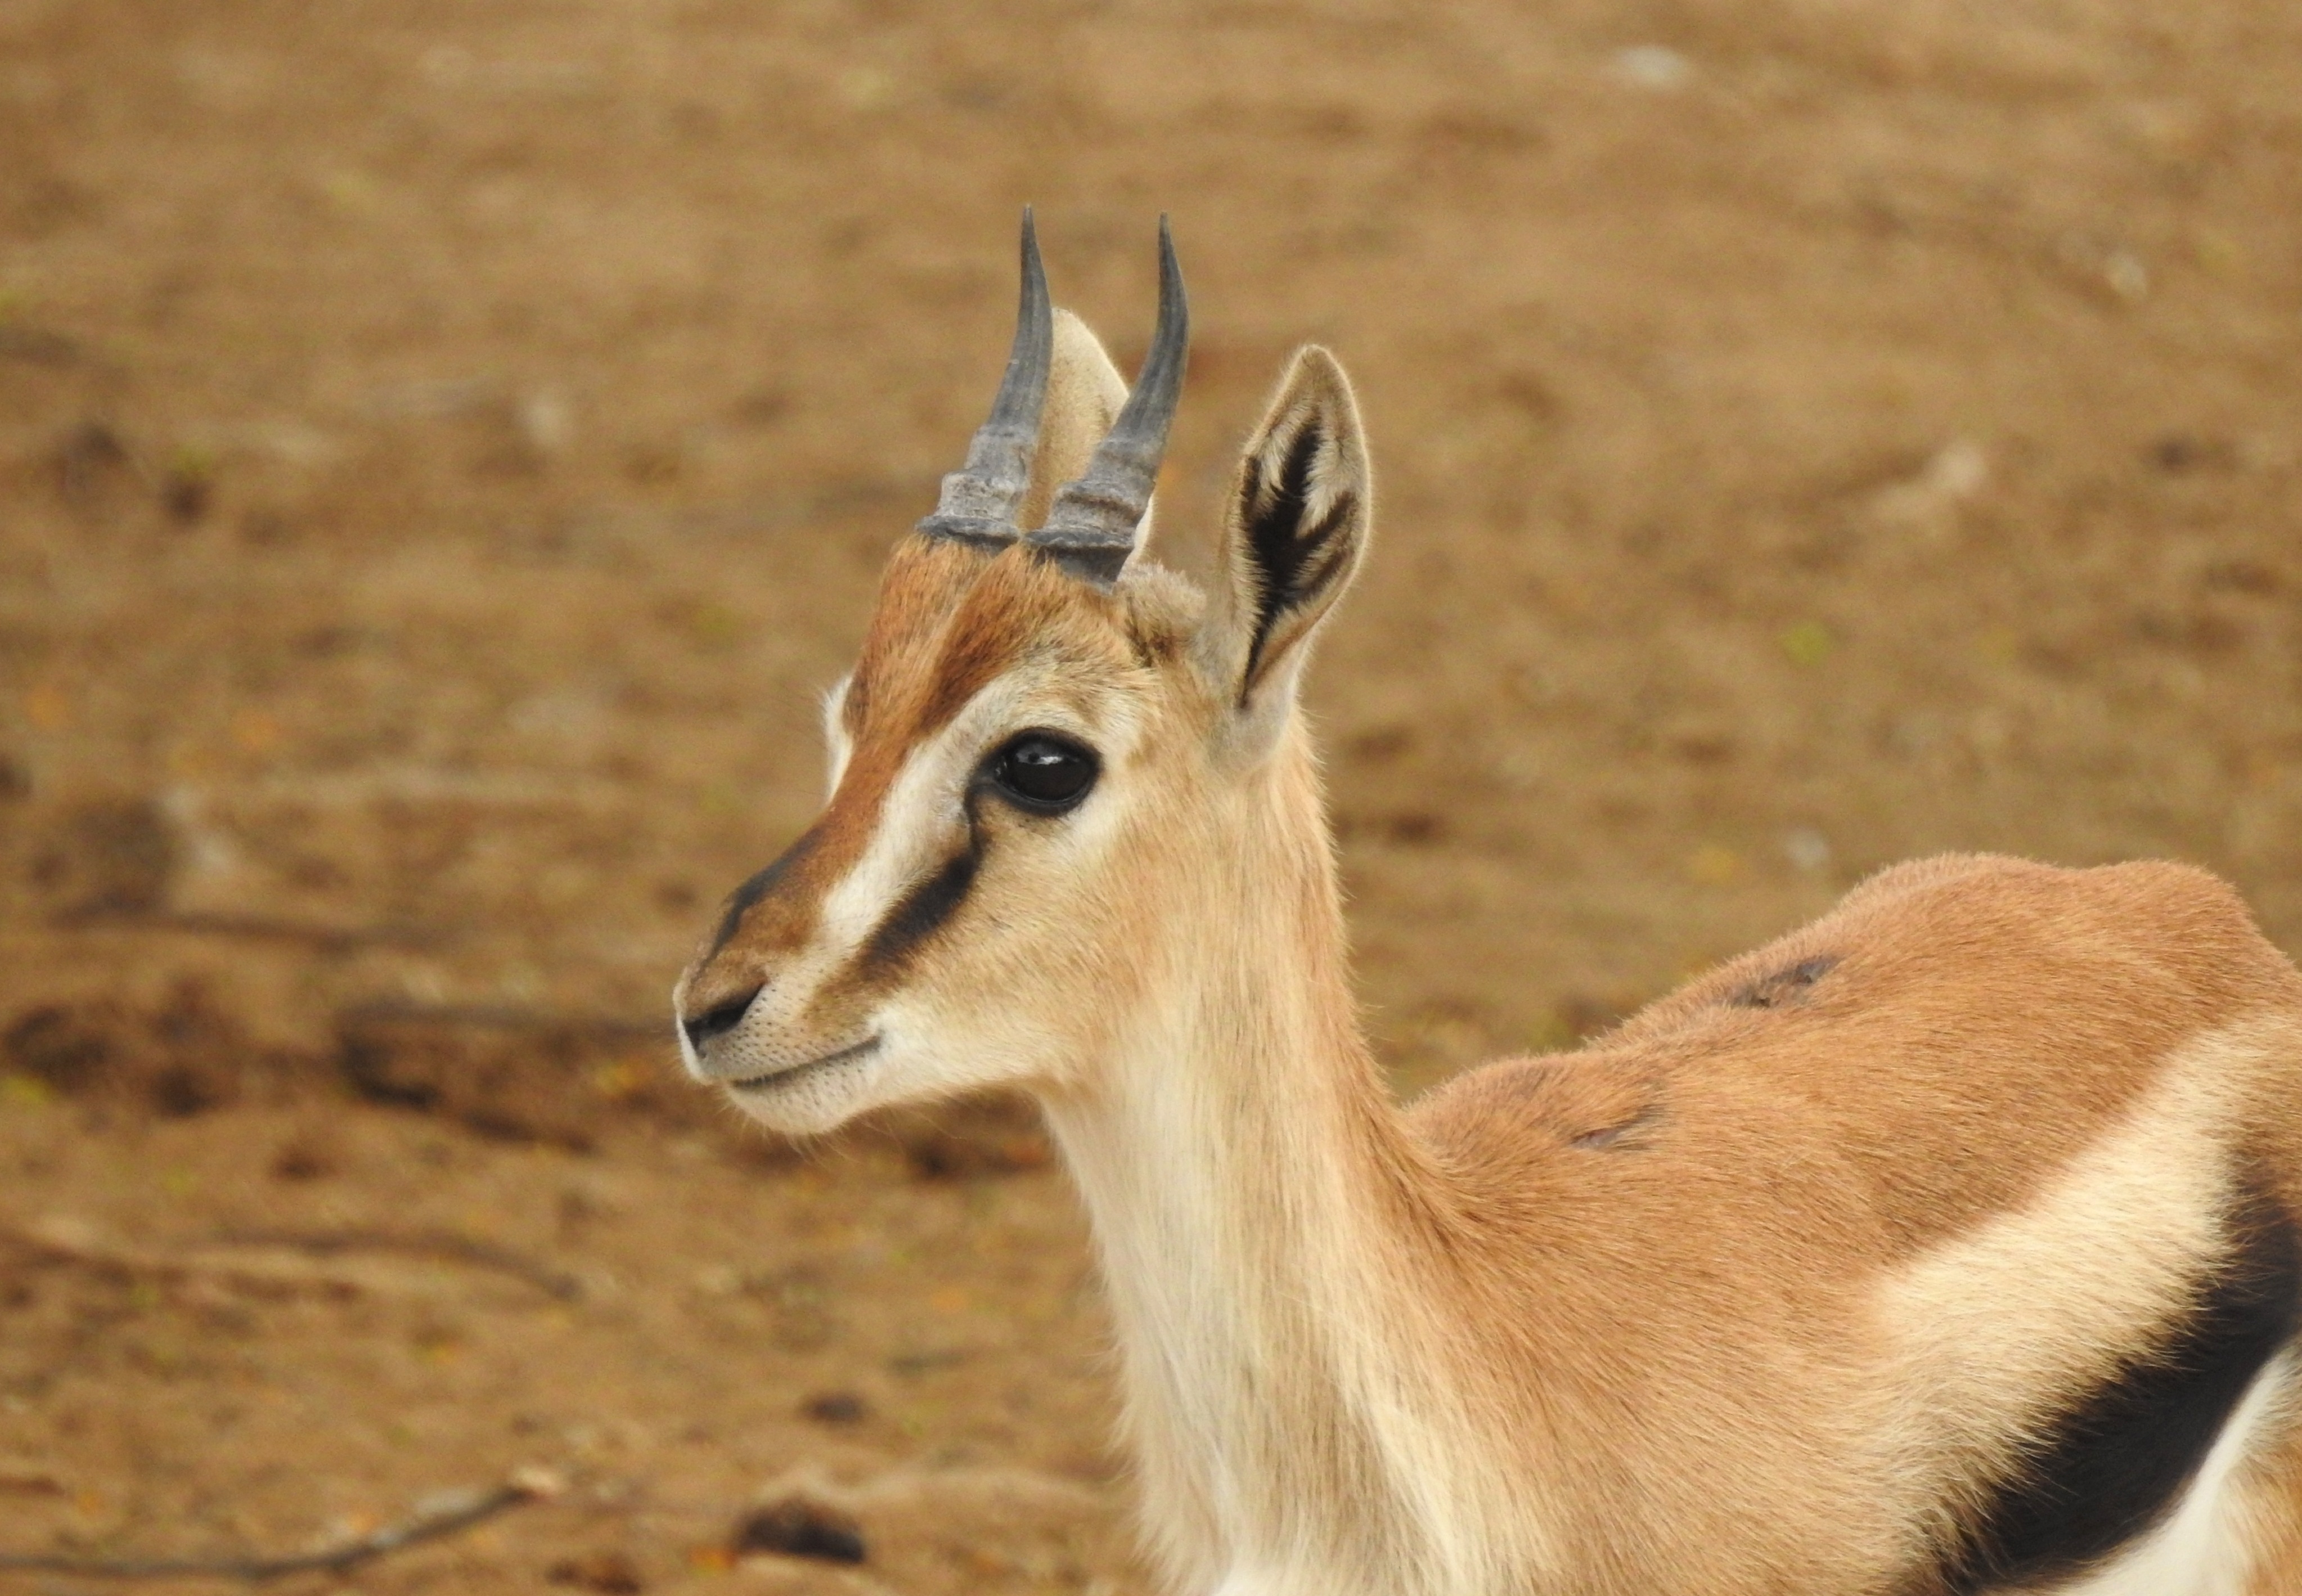 A cute Thomson's gazelle